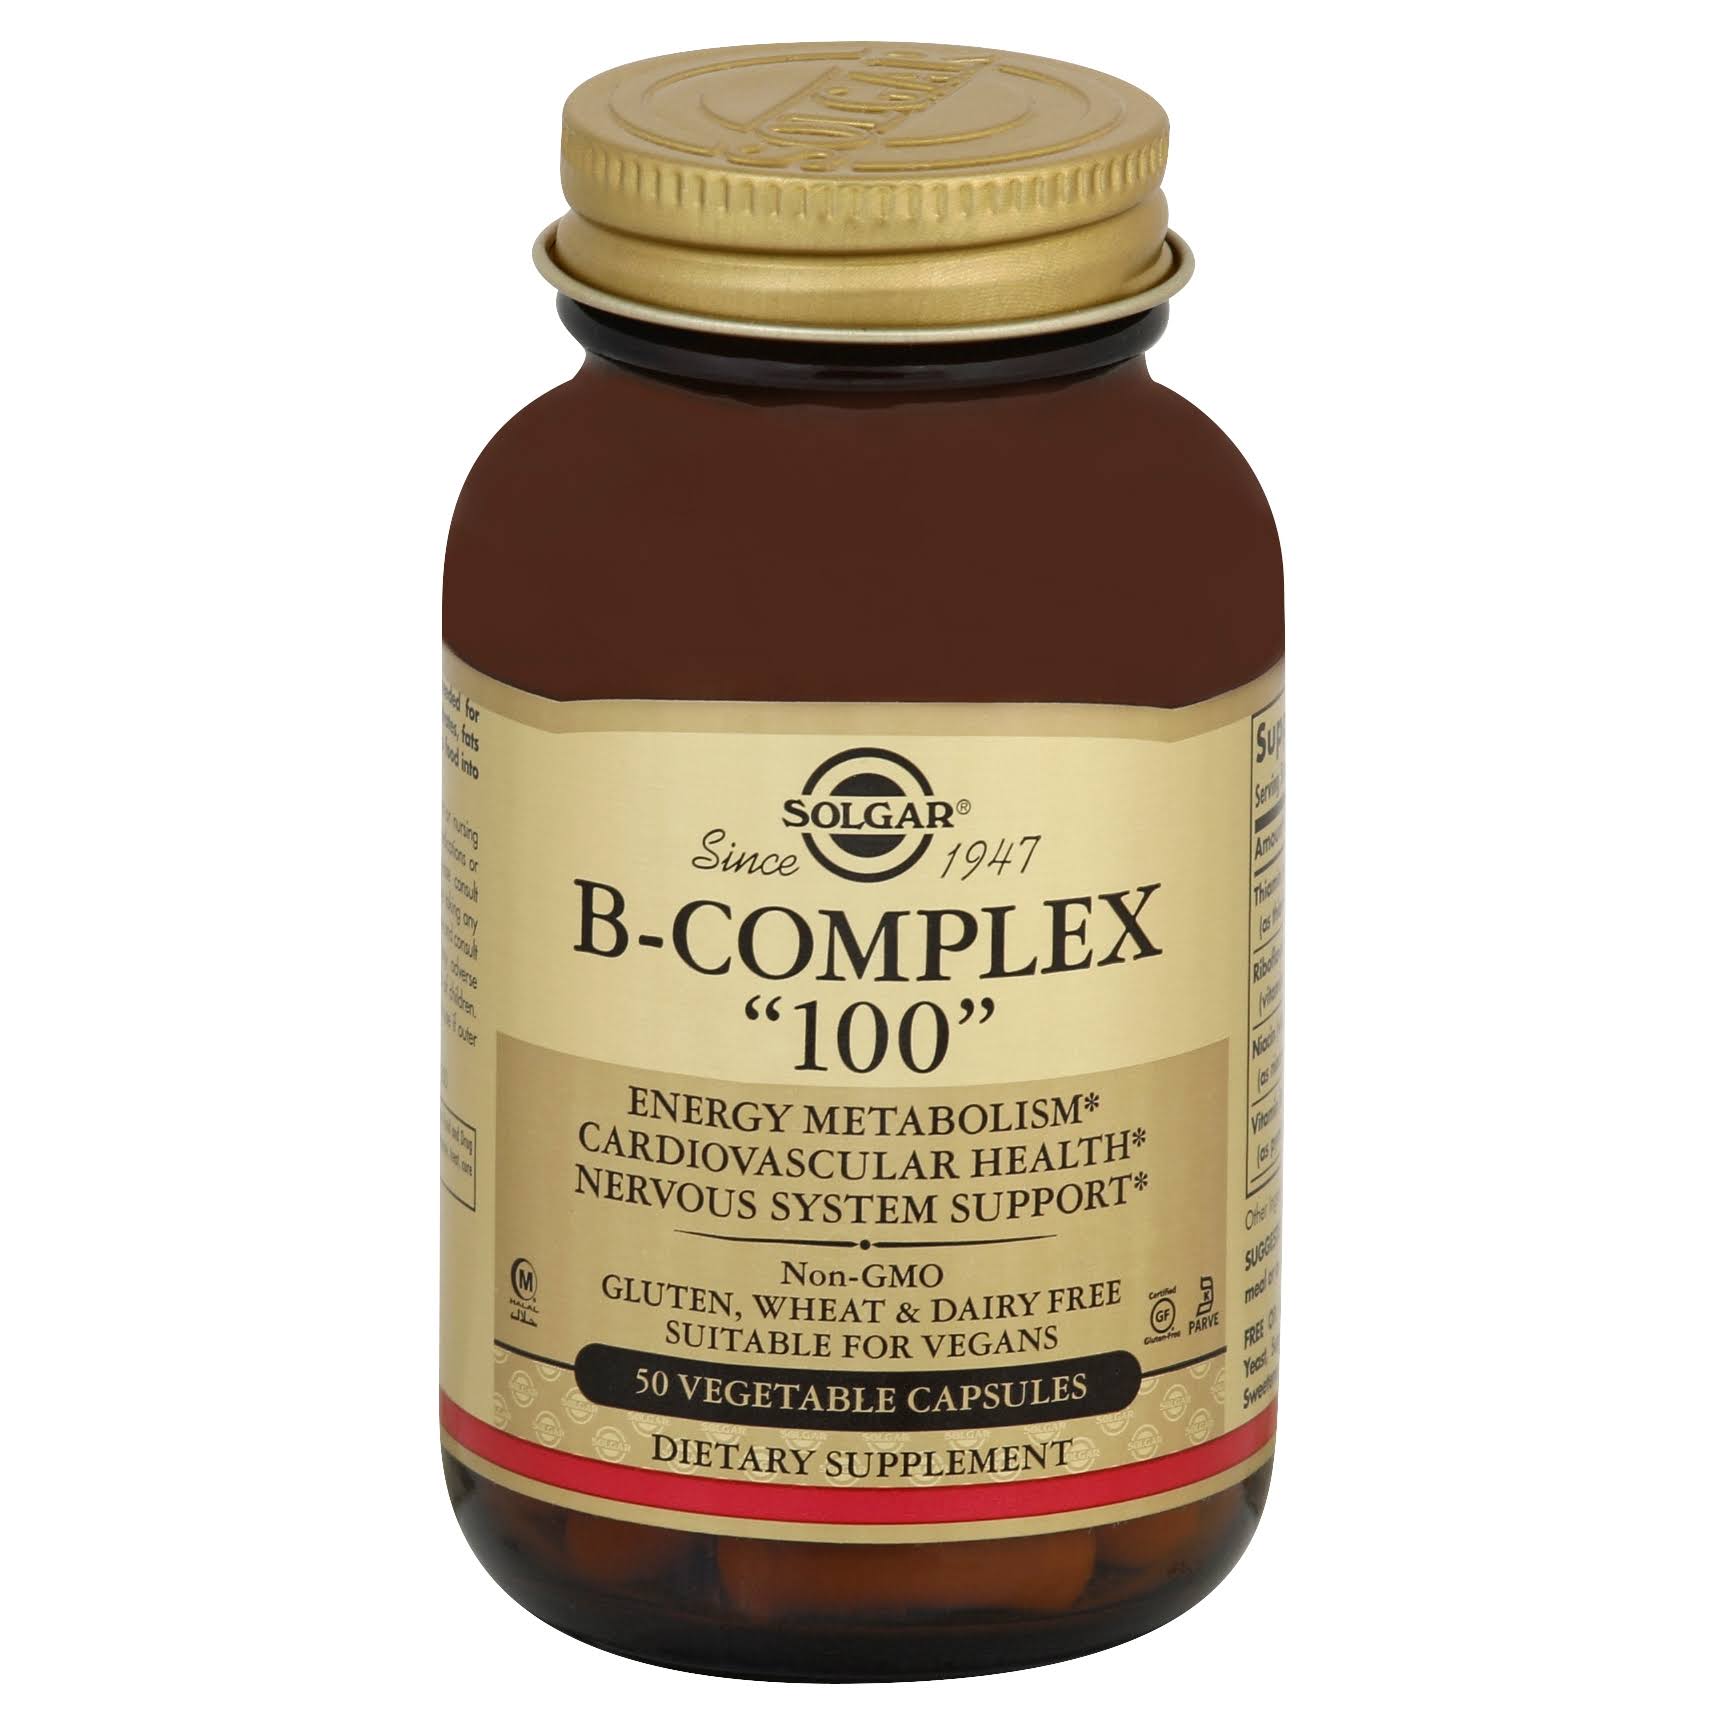 Solgar B-Complex 100, Vegetable Capsules - 50 capsules